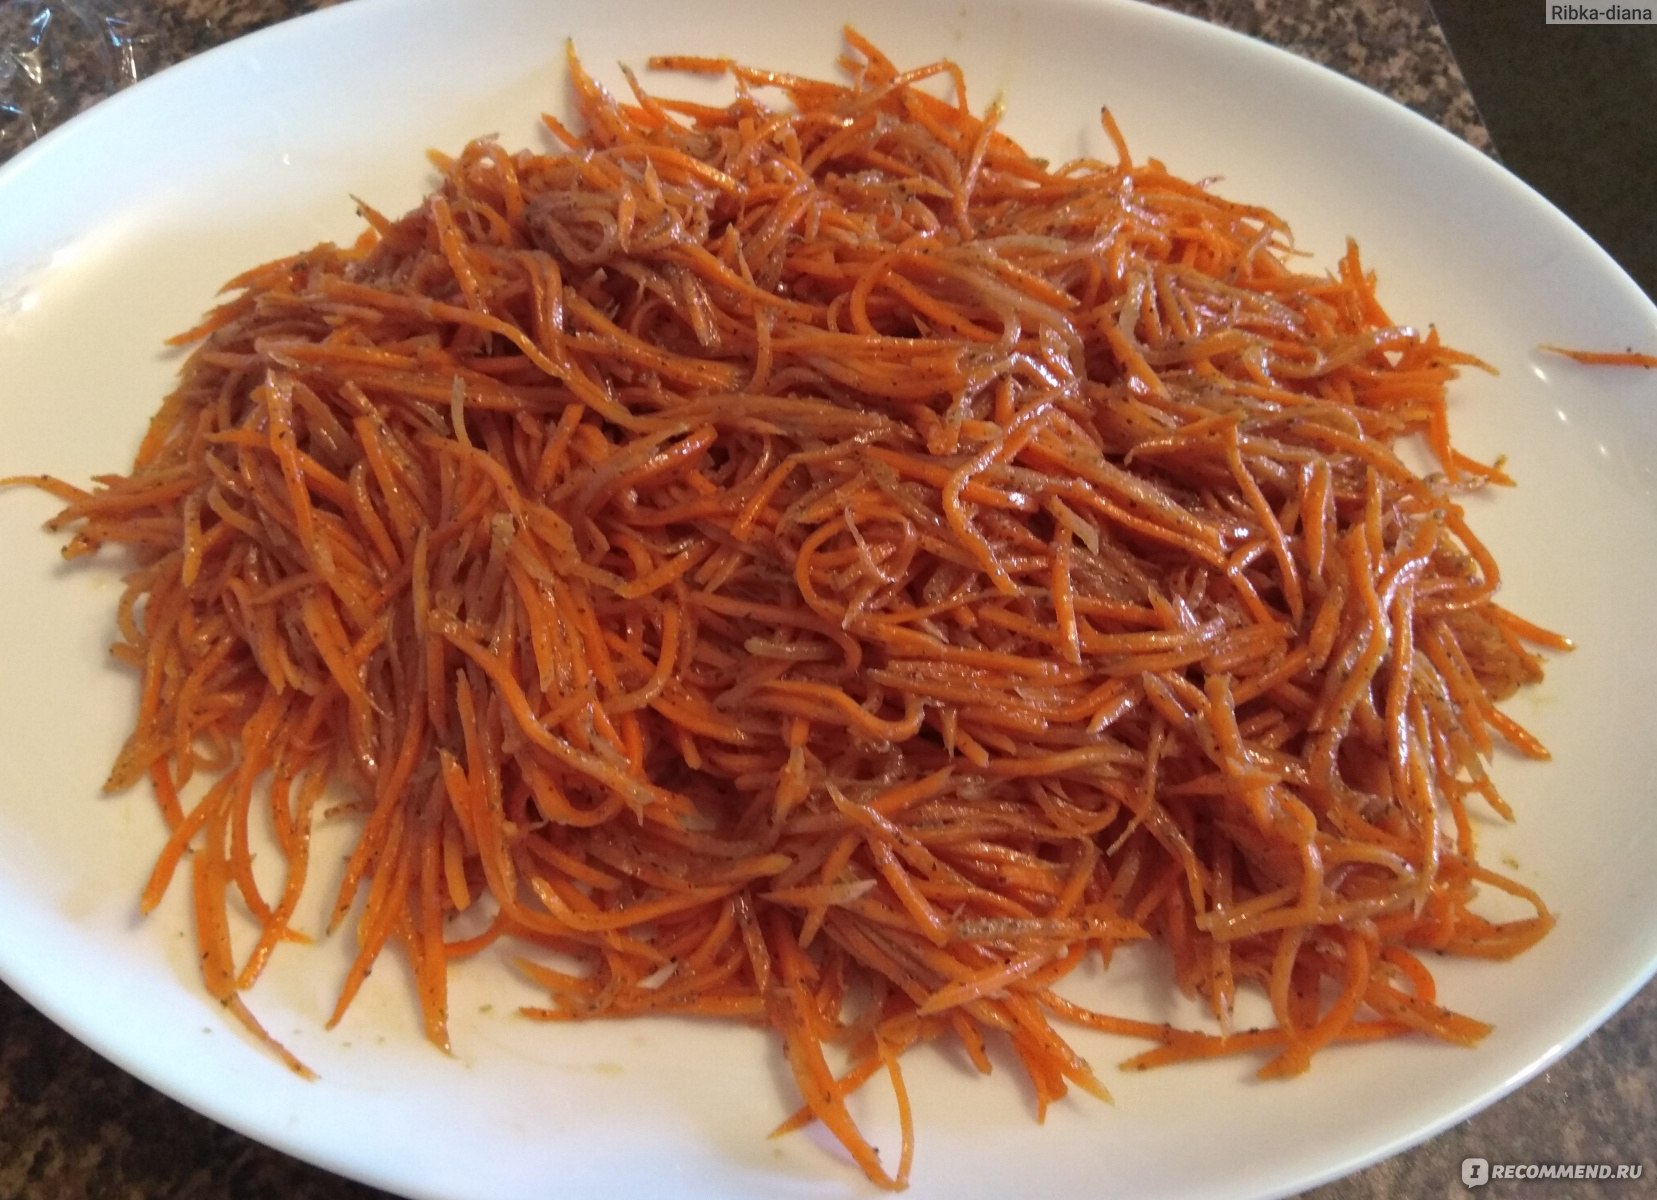 Моя морковка по-корейски!